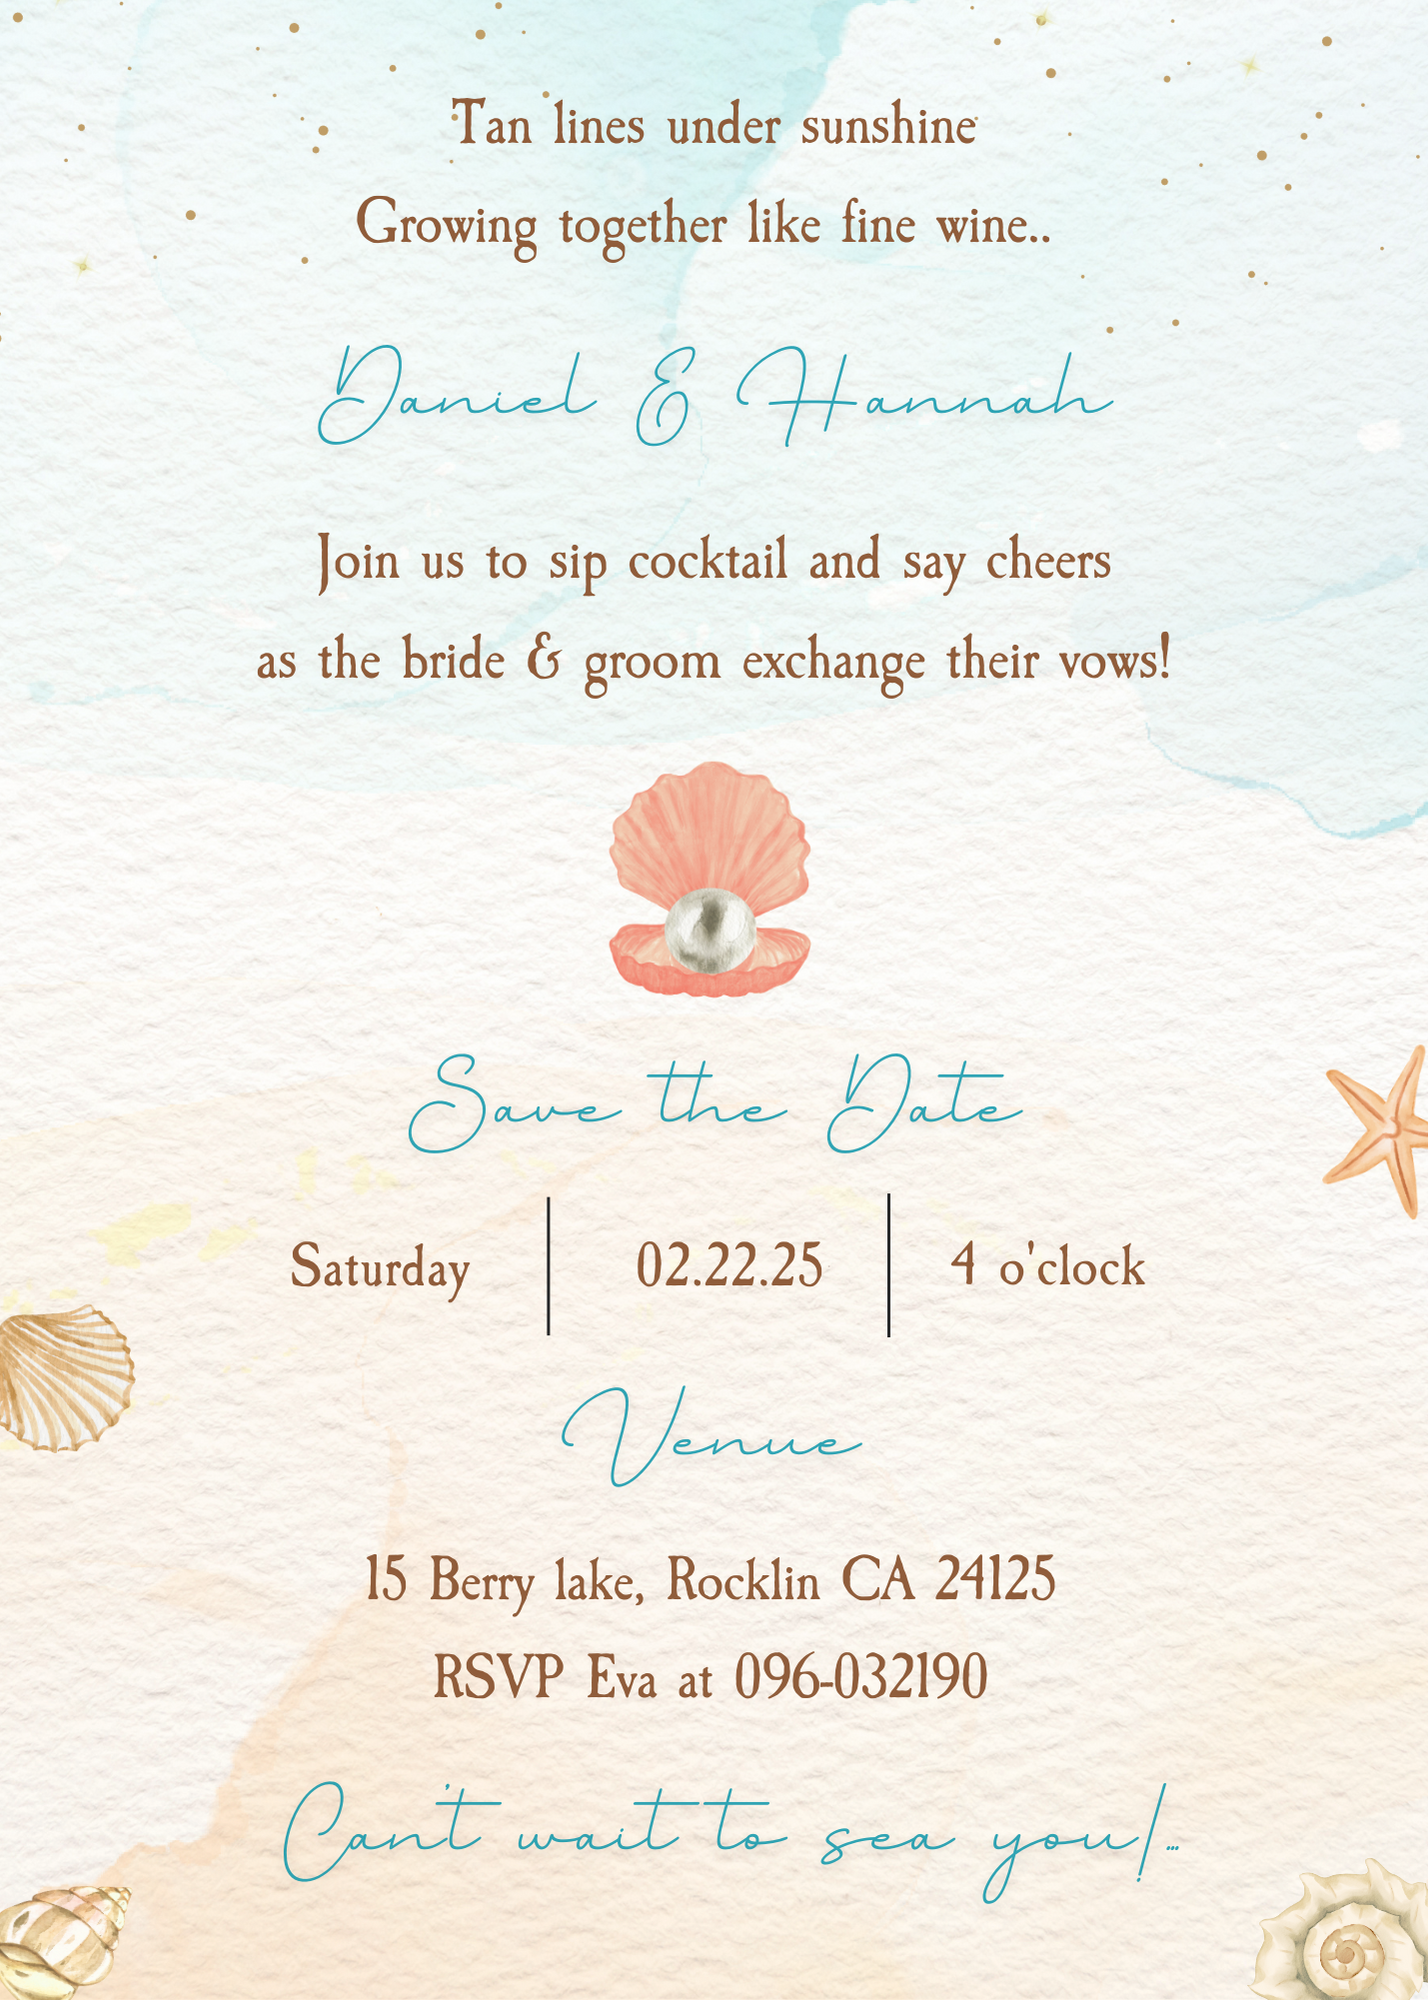 Tarjeta digital de invitación de boda en la playa